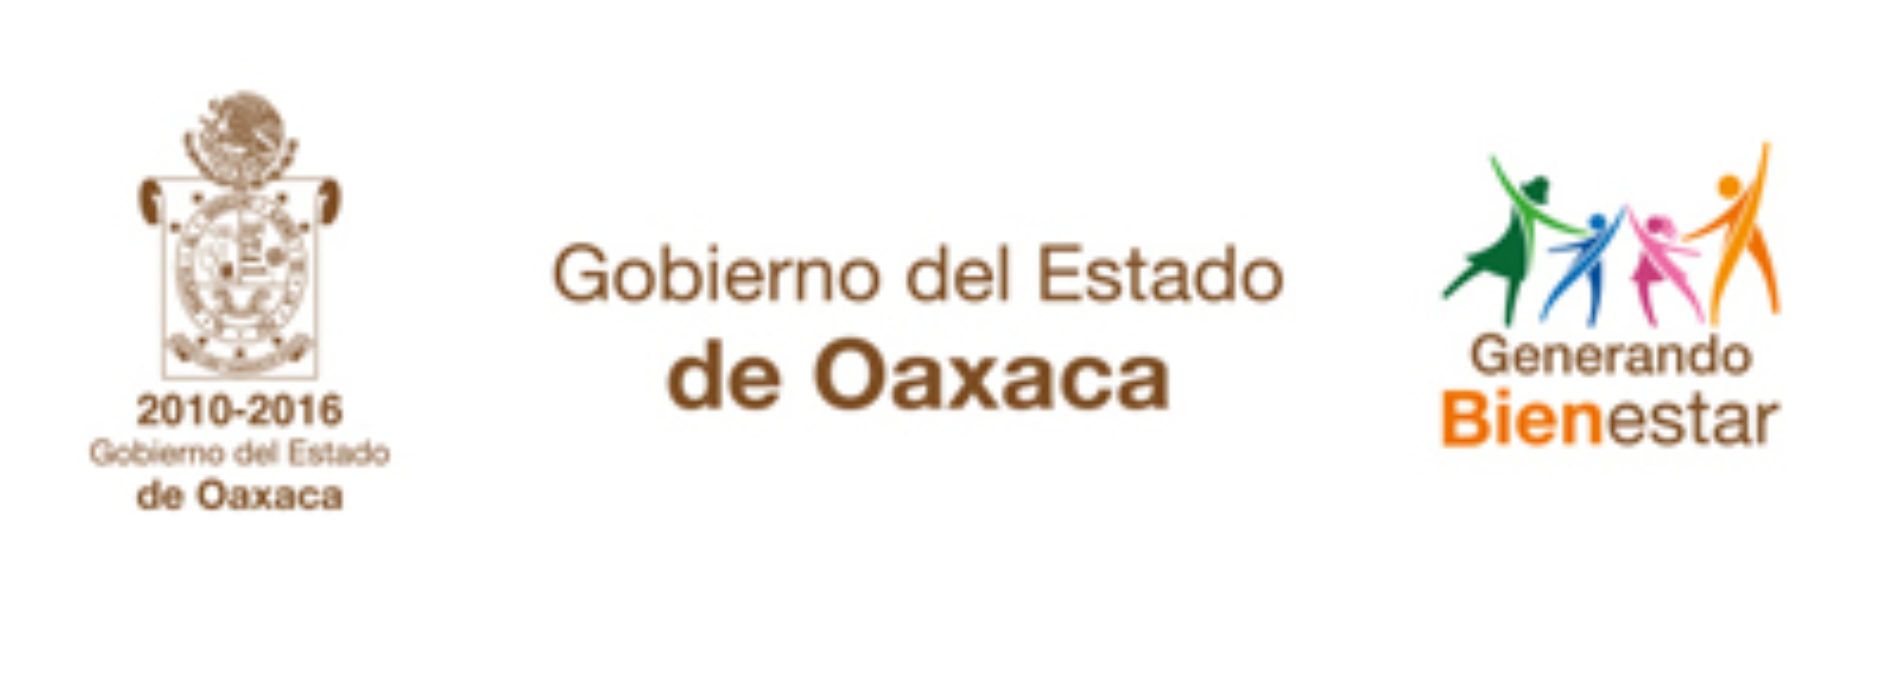 Atiende Gobierno de Oaxaca accidente ocurrido en la Carretera 200, de la Costa oaxaqueña